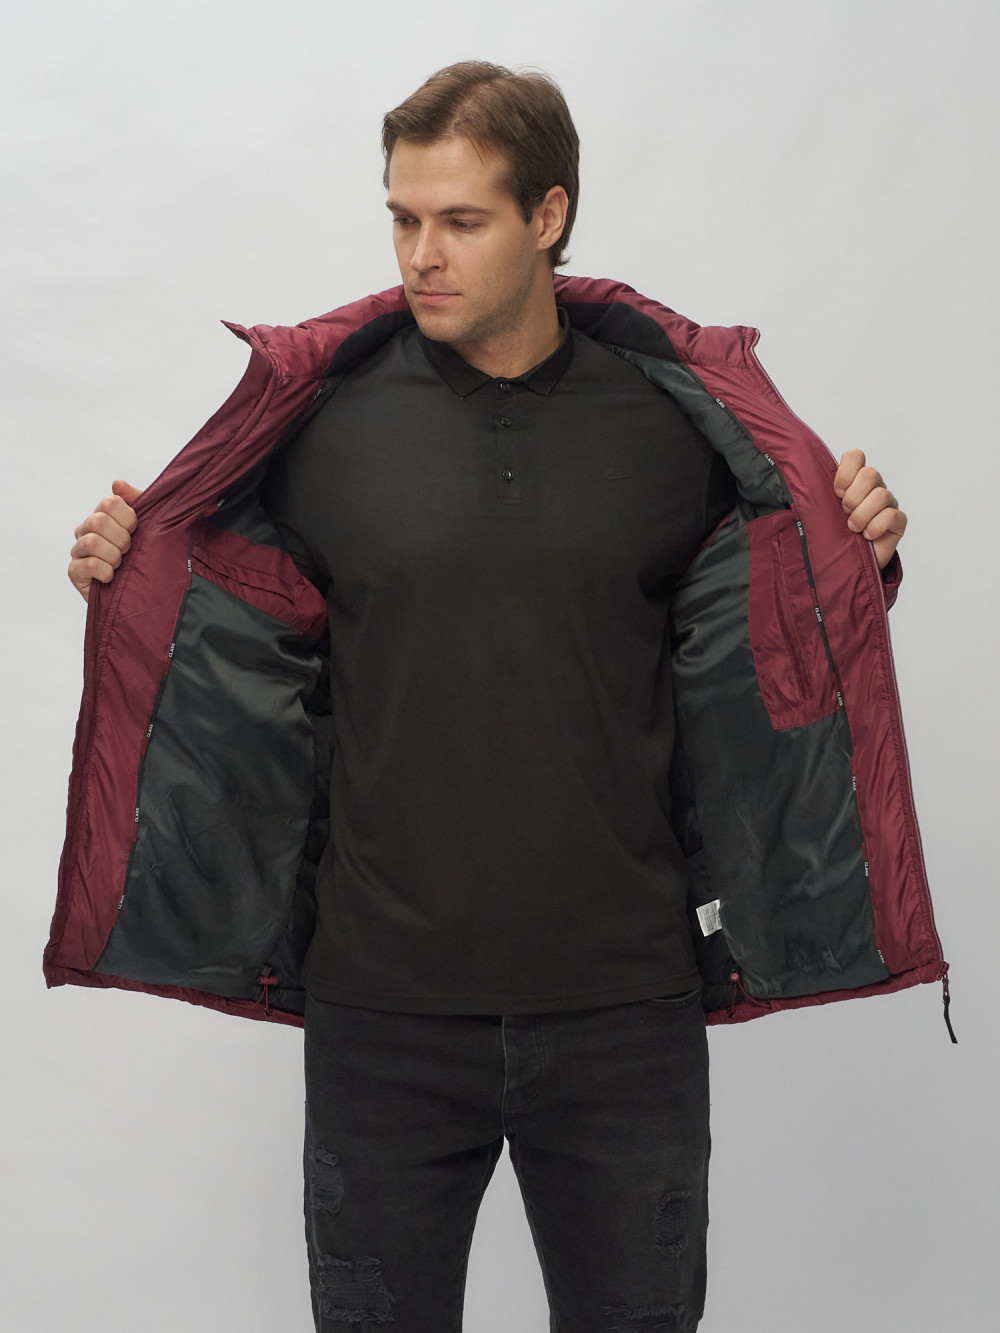 Купить куртку мужскую спортивную весеннюю оптом от производителя недорого в Москве 62188Bo 1